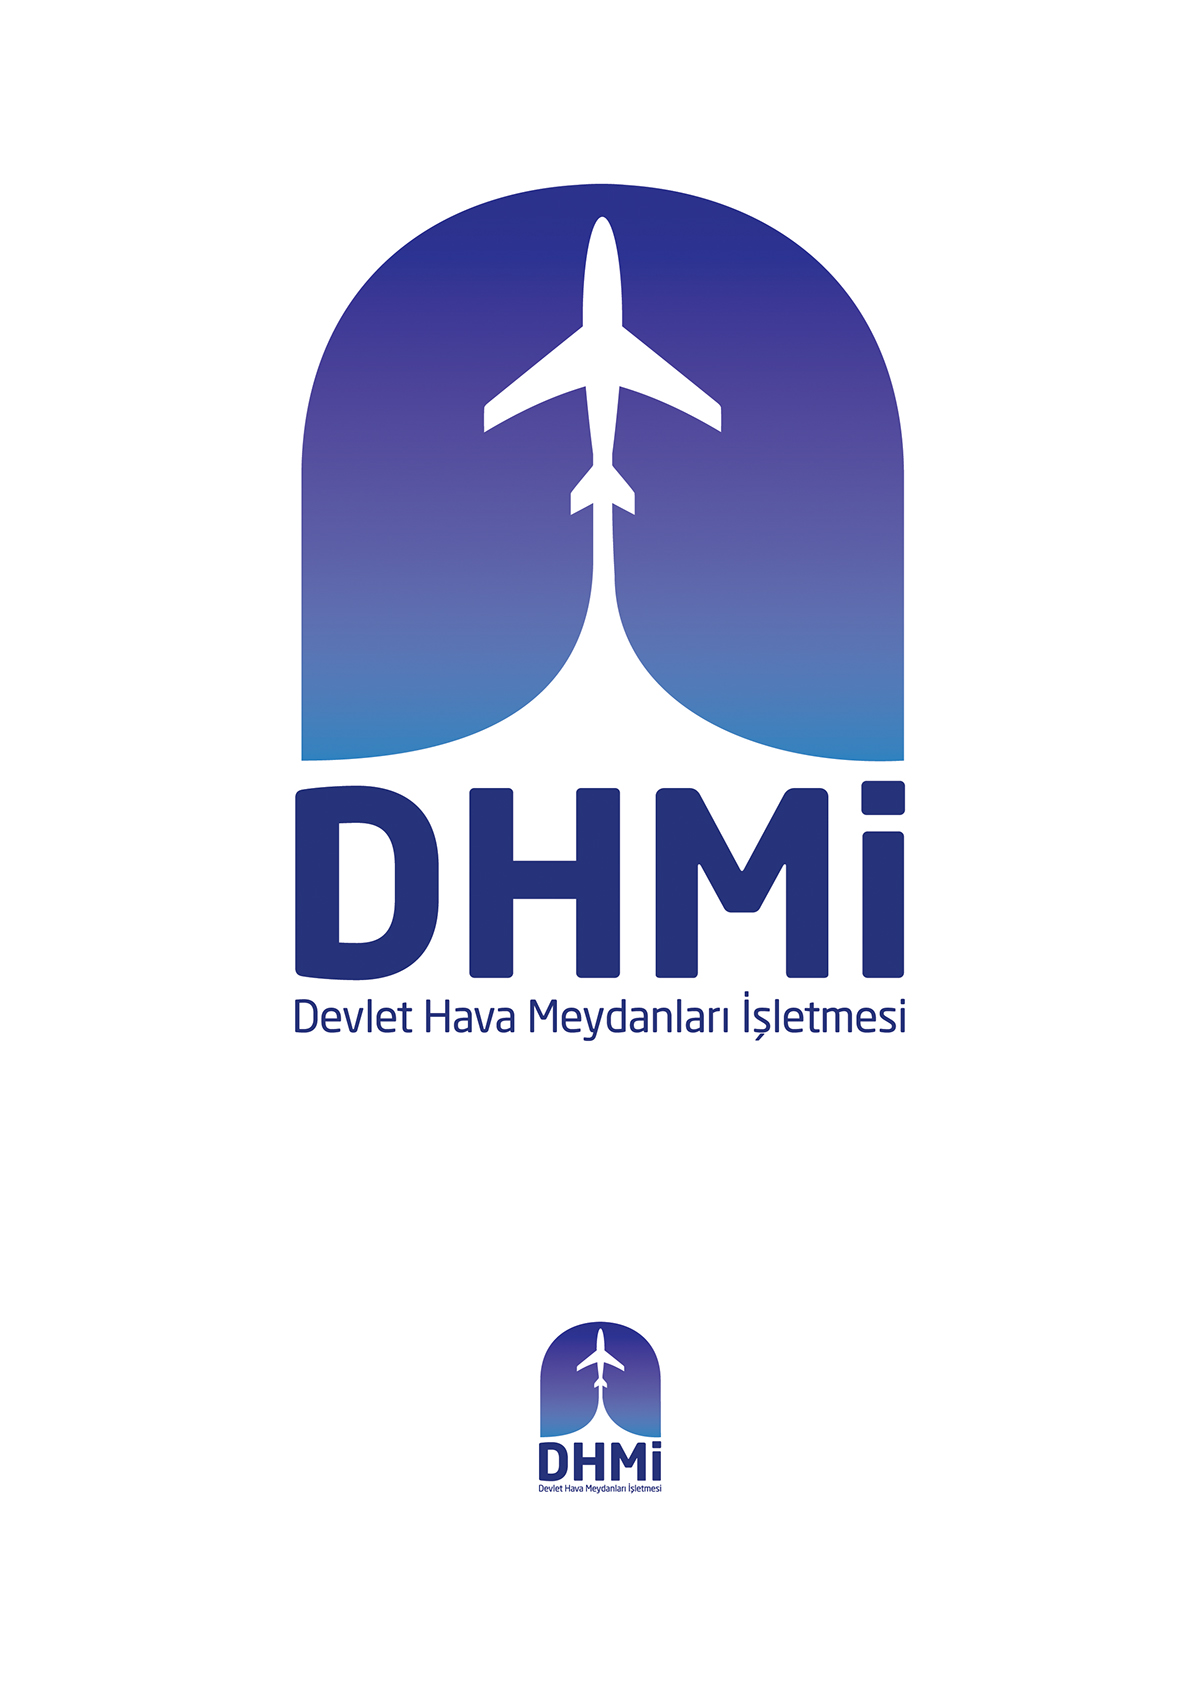 DHMİ logo design grafik tasarim Art Director